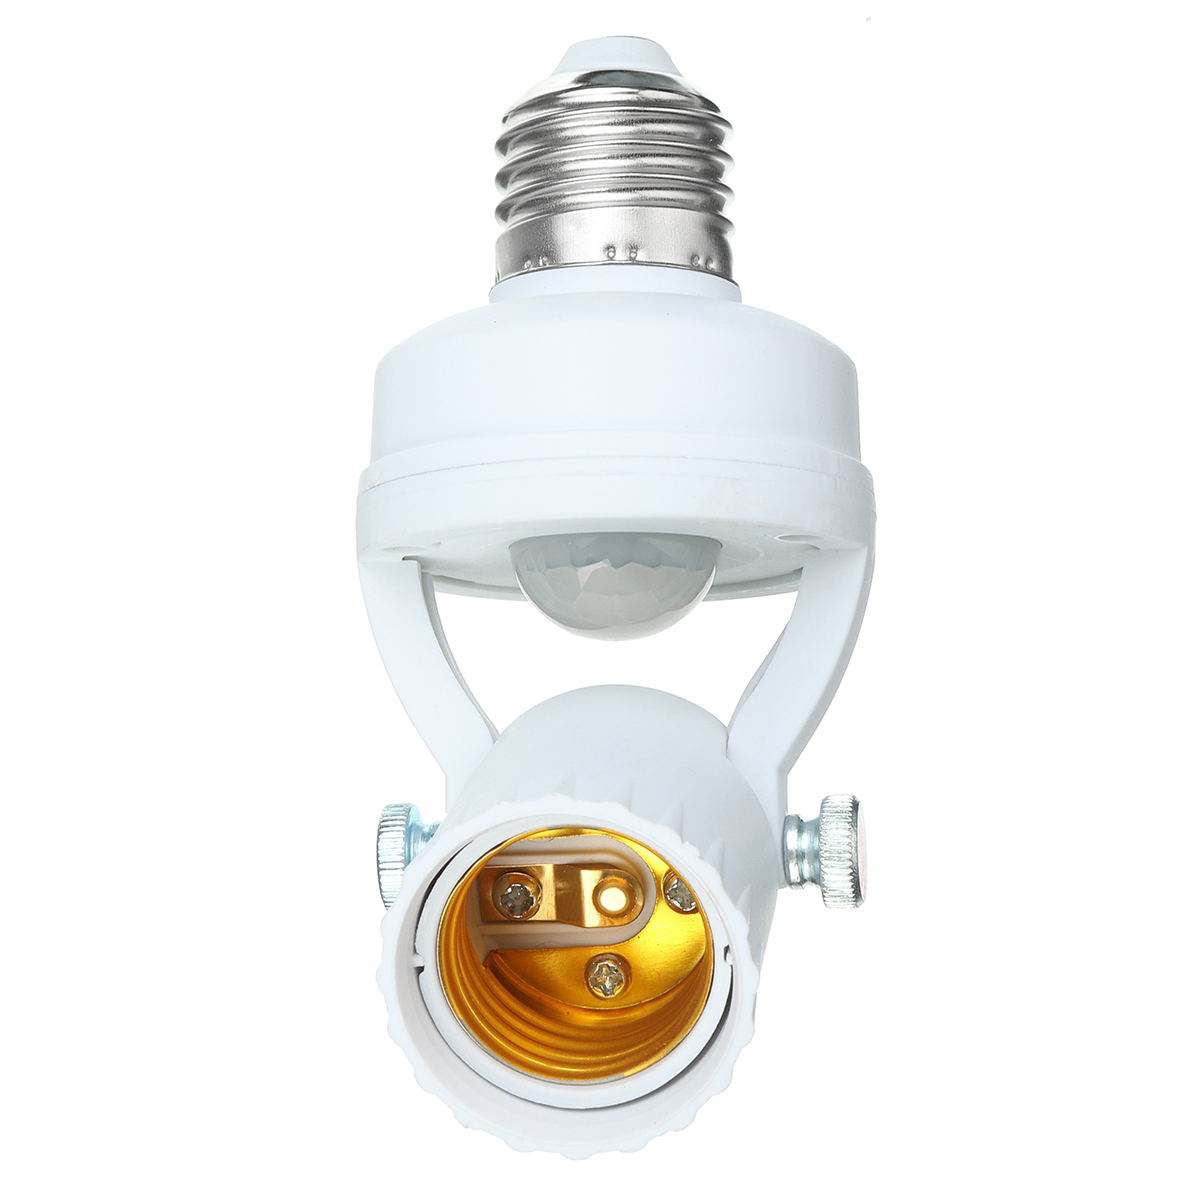 110-240V-Infrared-Motion-Light-Sensor-Intelligent-Bulb-Lamp-Base-Switch-E26E27-1795583-5